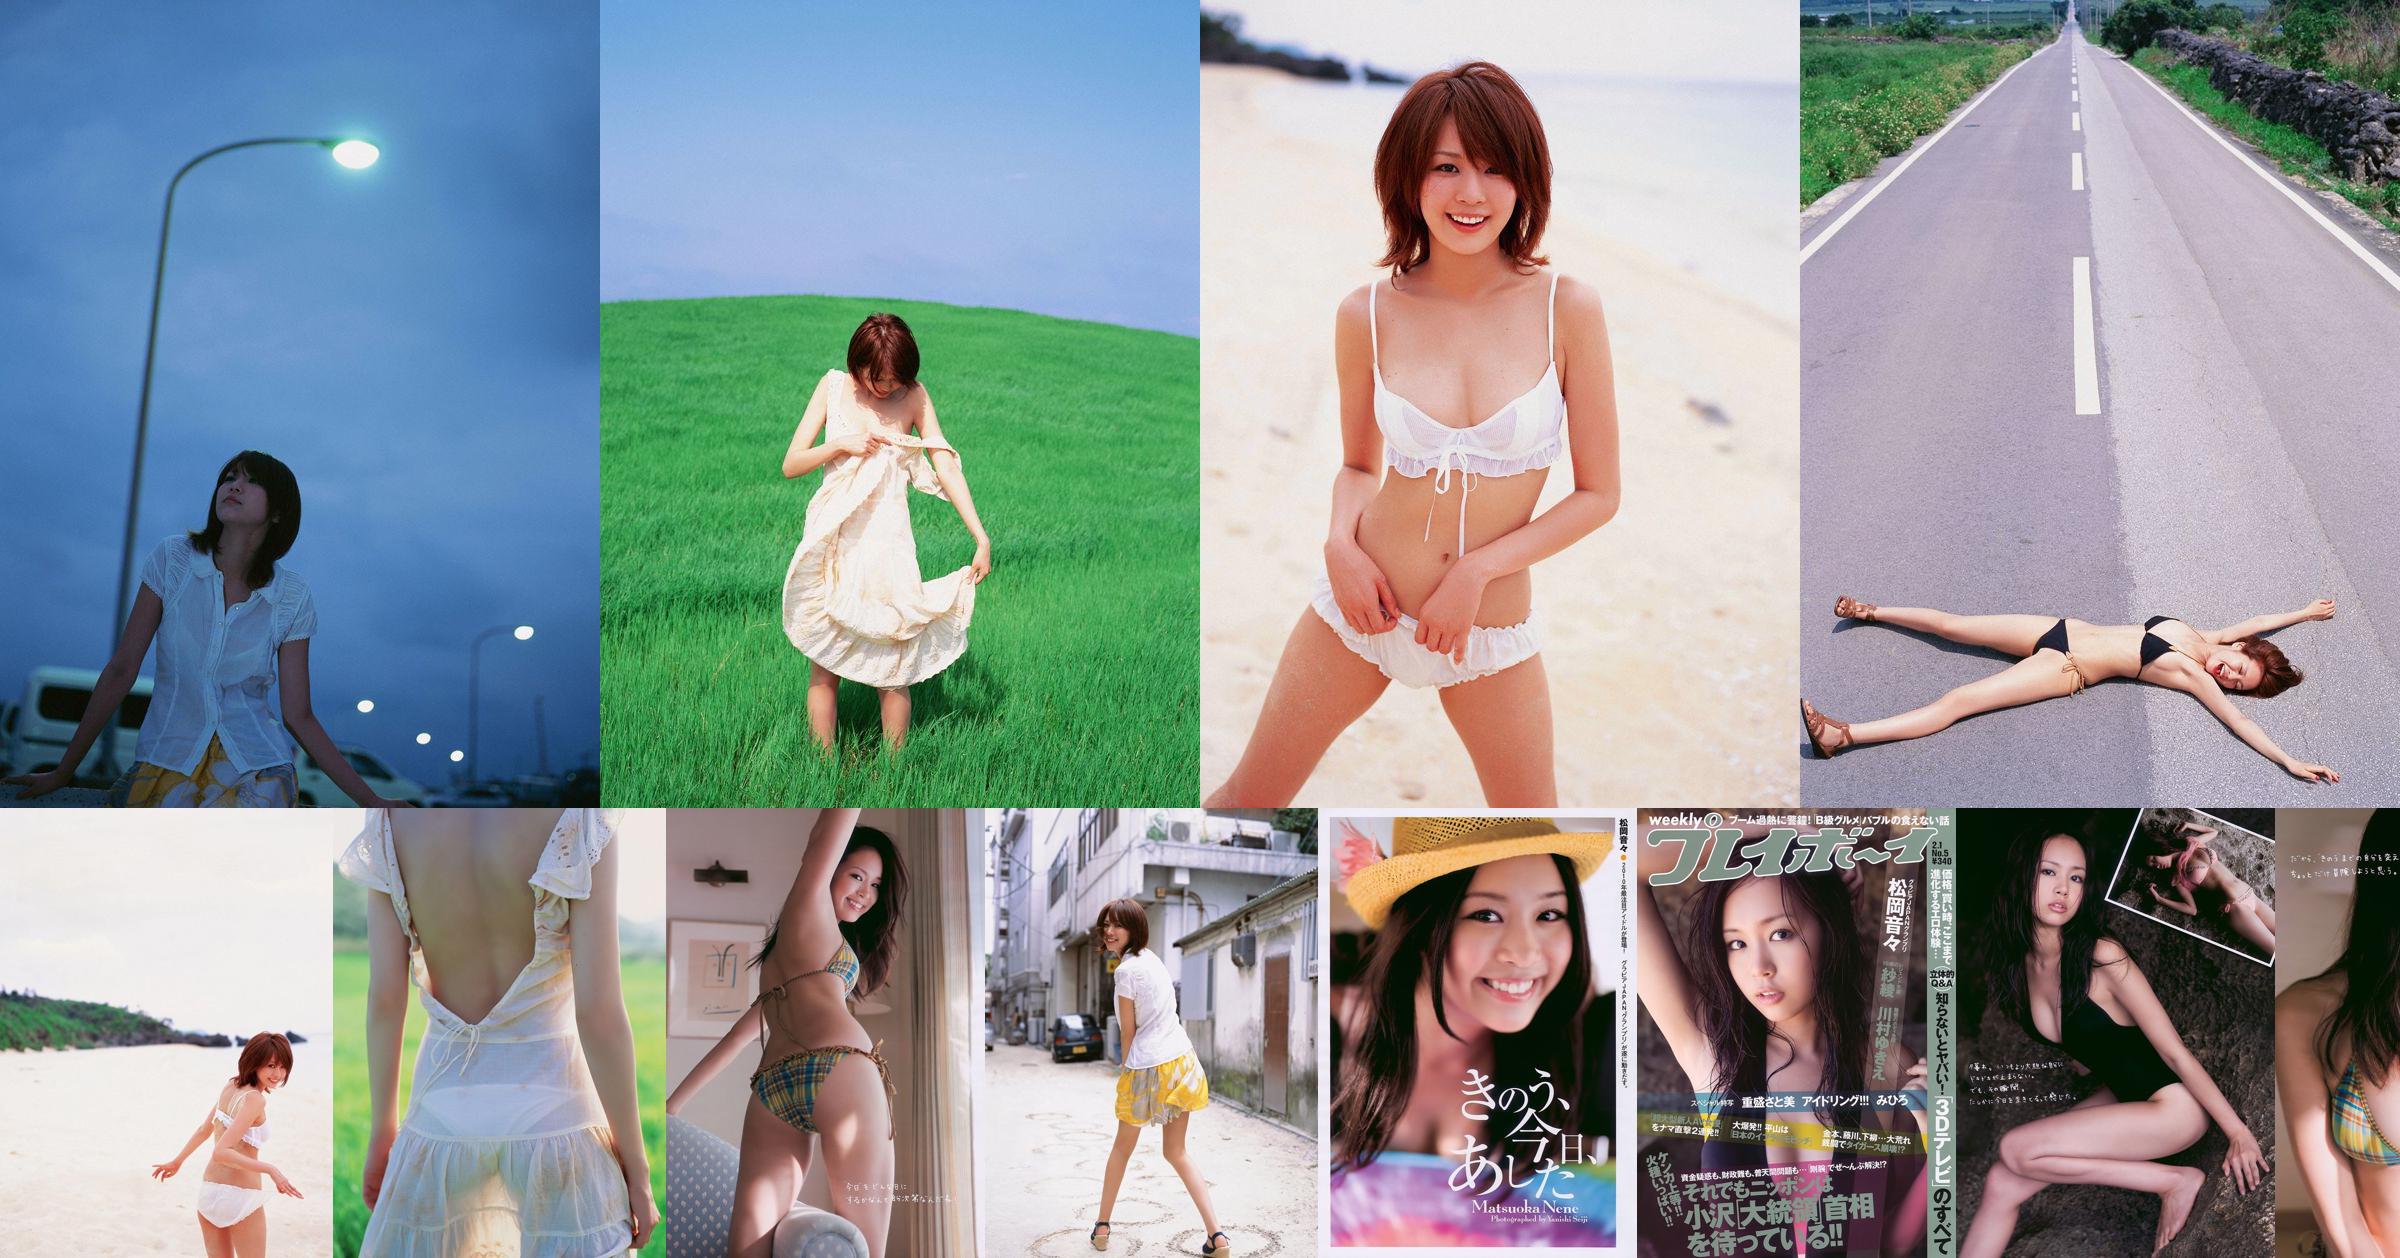 Nene Matsuoka Saaya Kawamura Yukie Shigemori Satomi Shigemori [Playboy hebdomadaire] 2010 No.05 Photo Mori No.84d5a3 Page 5